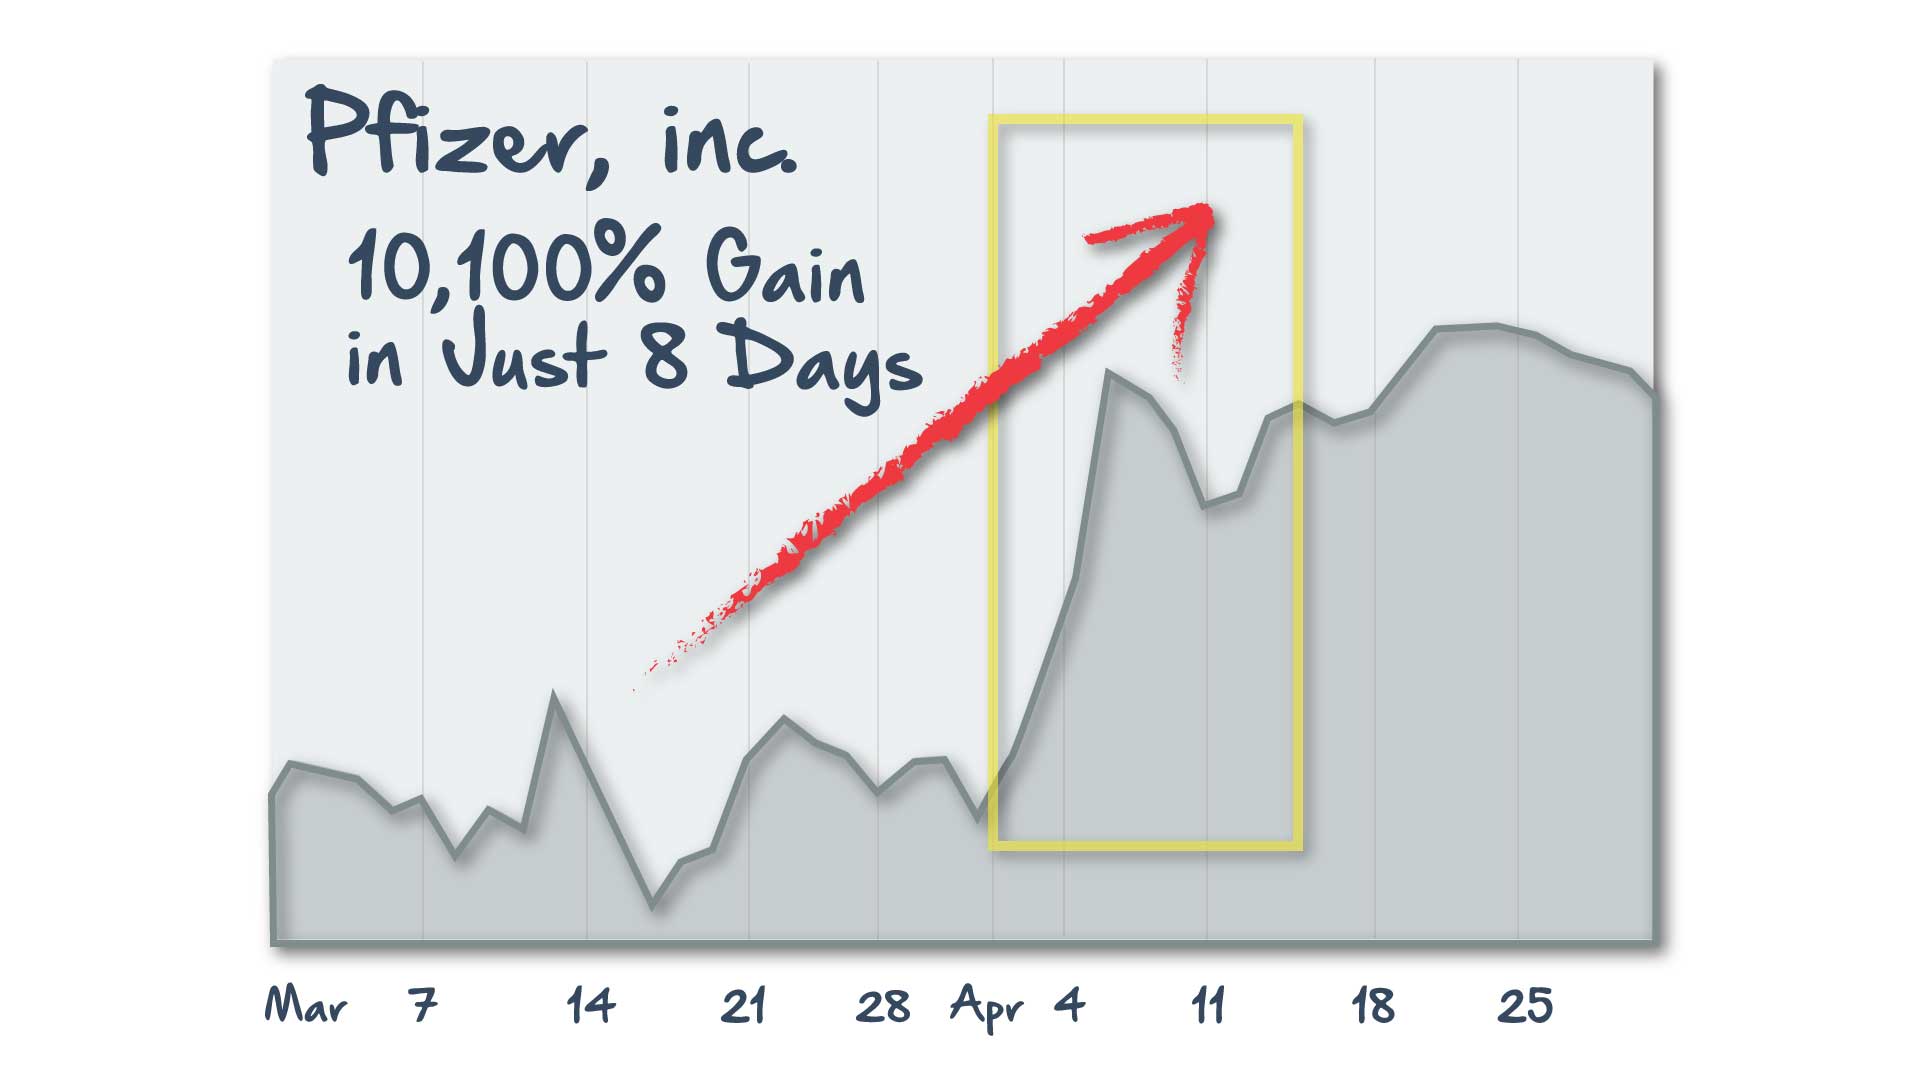 Pfizer Chart